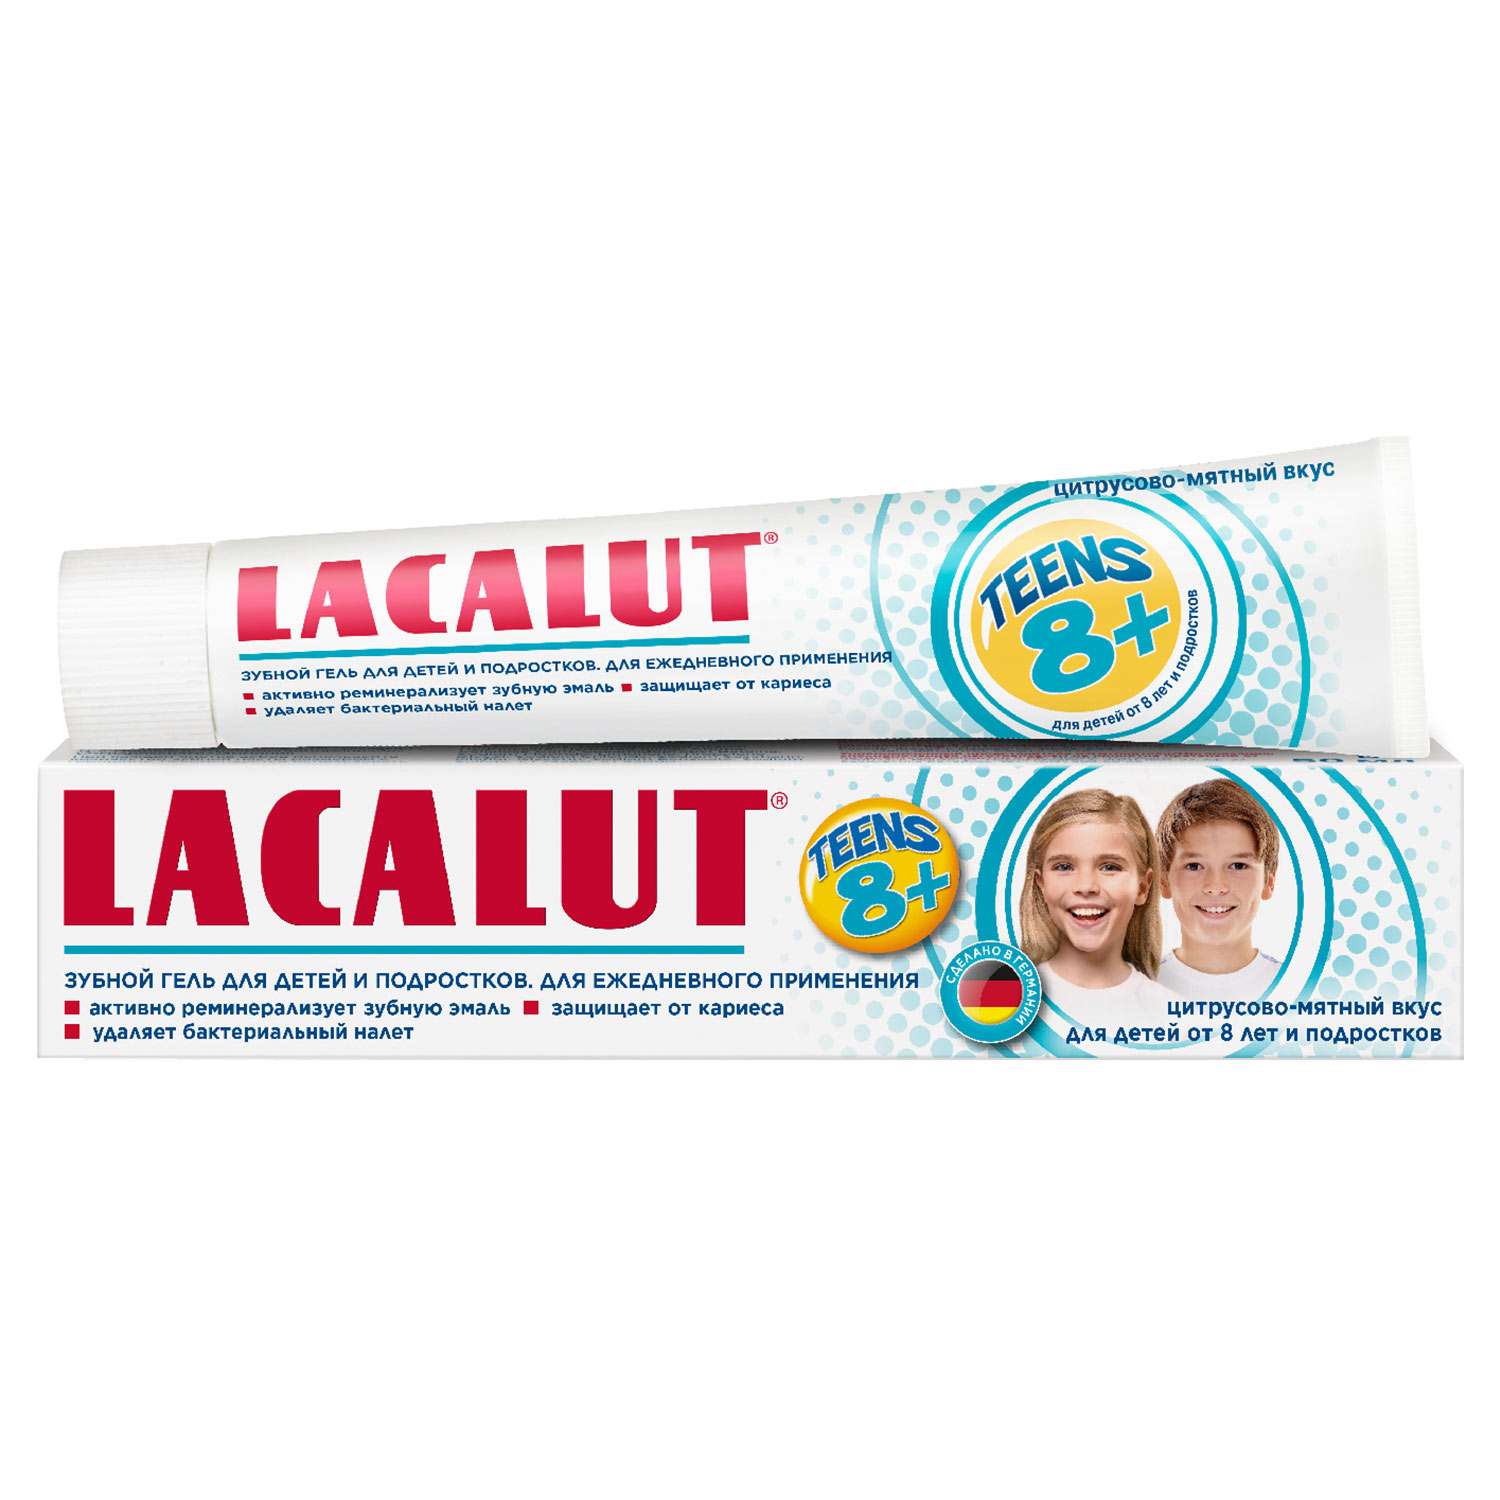 Зубной гель LACALUT Teens8+ 50мл - фото 2